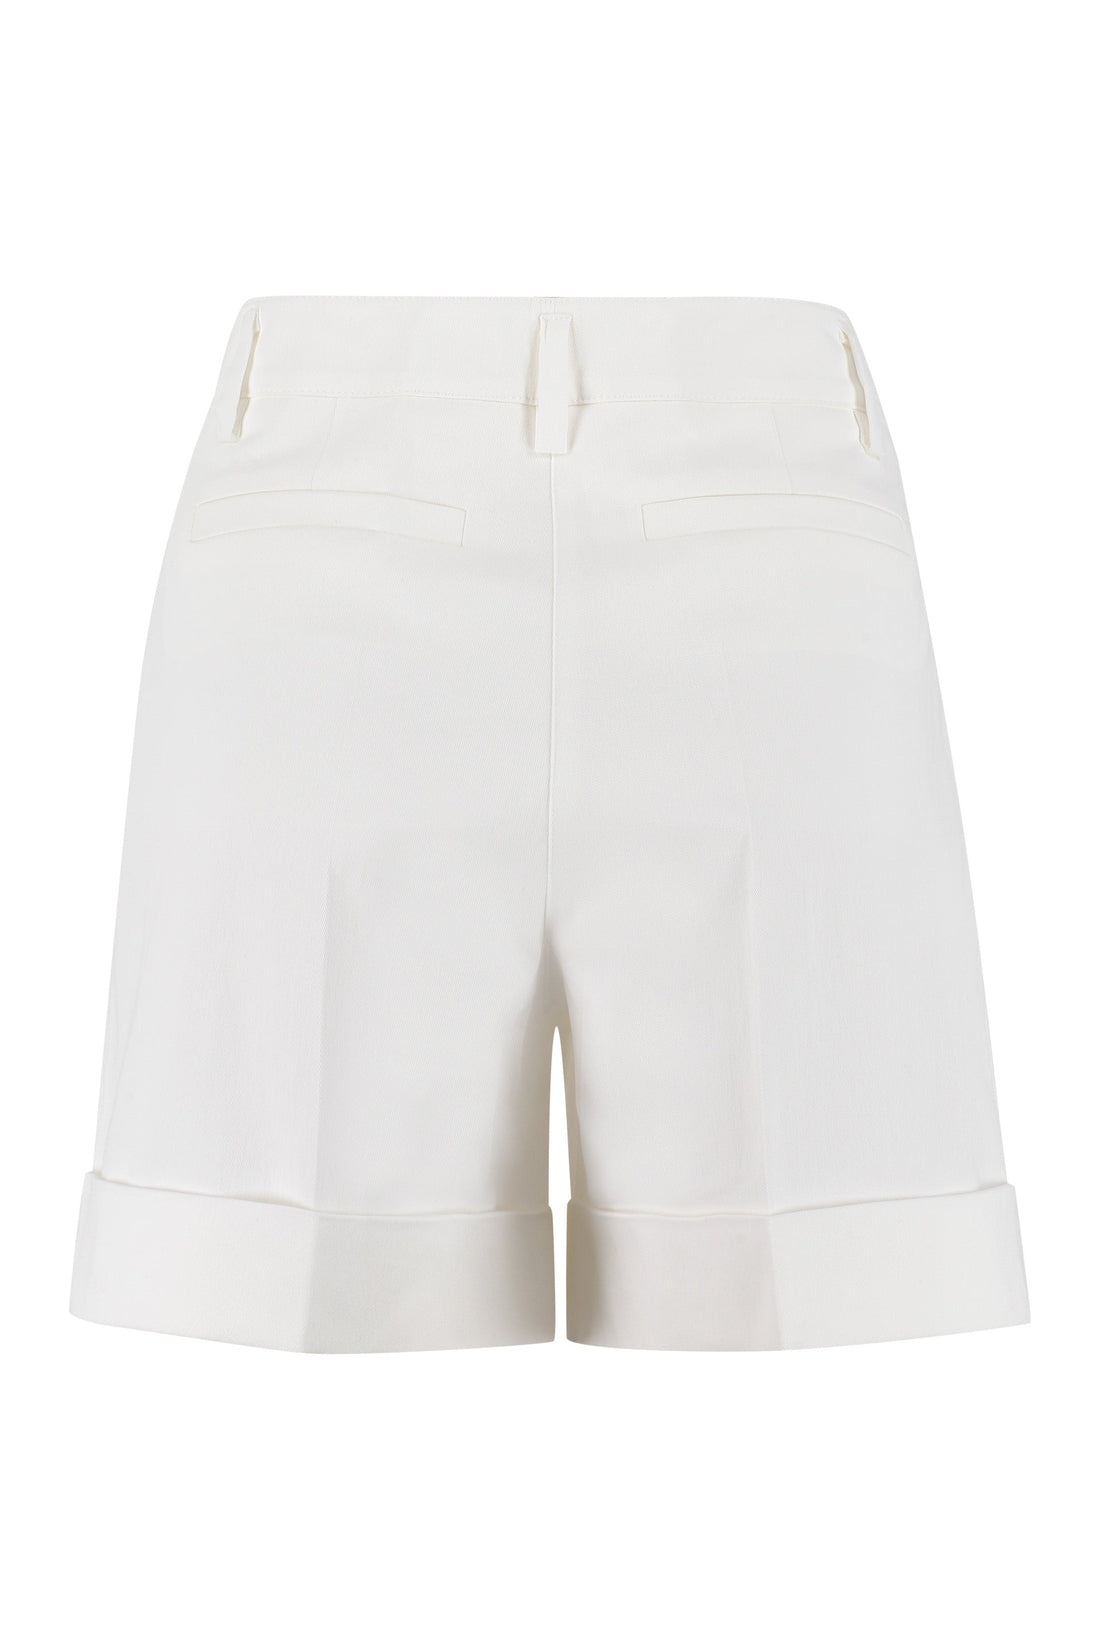 Parosh-OUTLET-SALE-Cotton shorts-ARCHIVIST